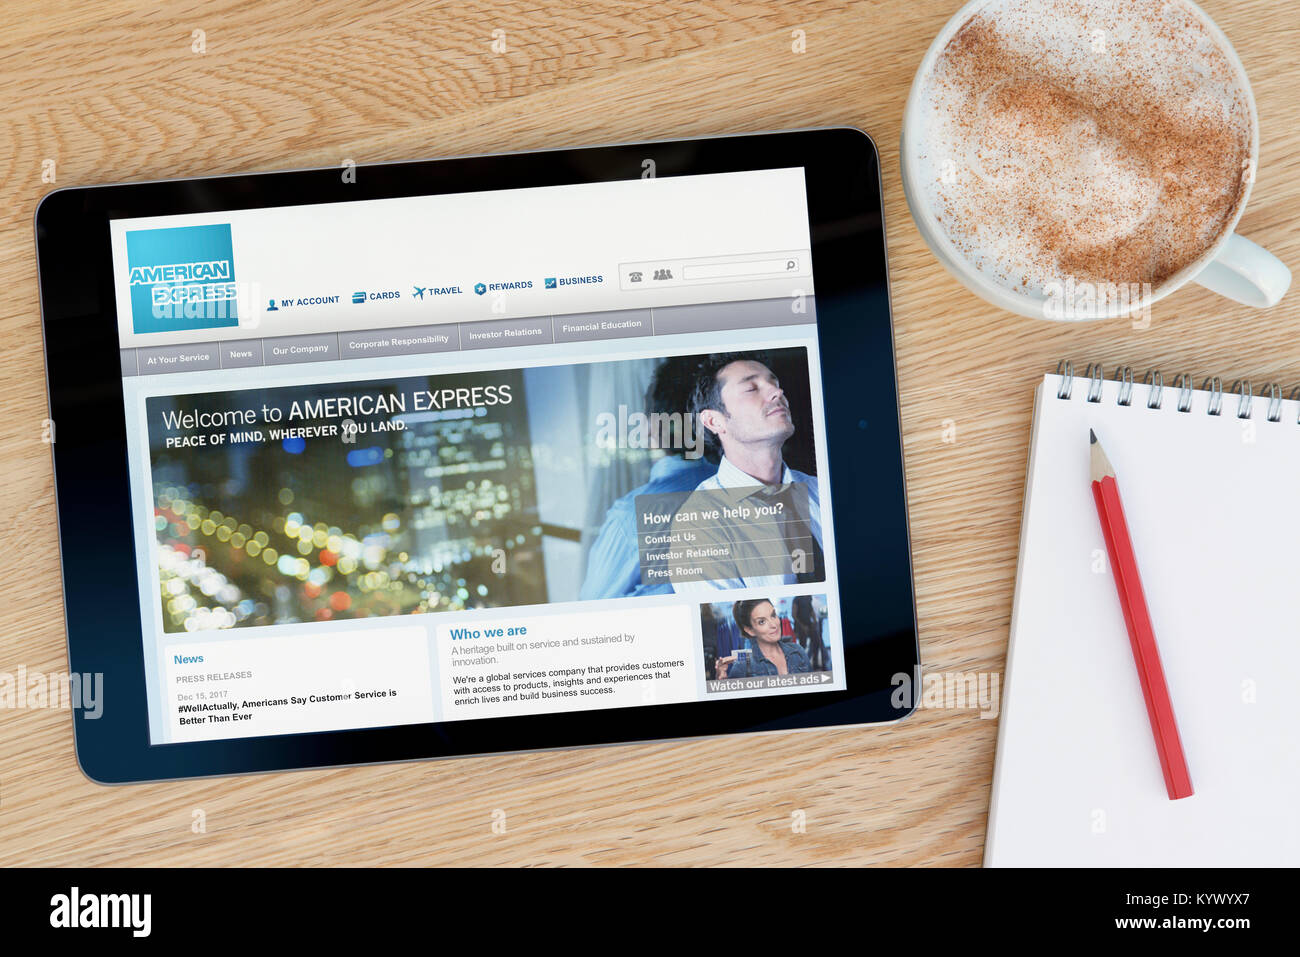 Le site d'American Express sur une tablette iPad, sur une table en bois à côté d'un bloc-notes, crayon et tasse de café (rédaction uniquement) Banque D'Images